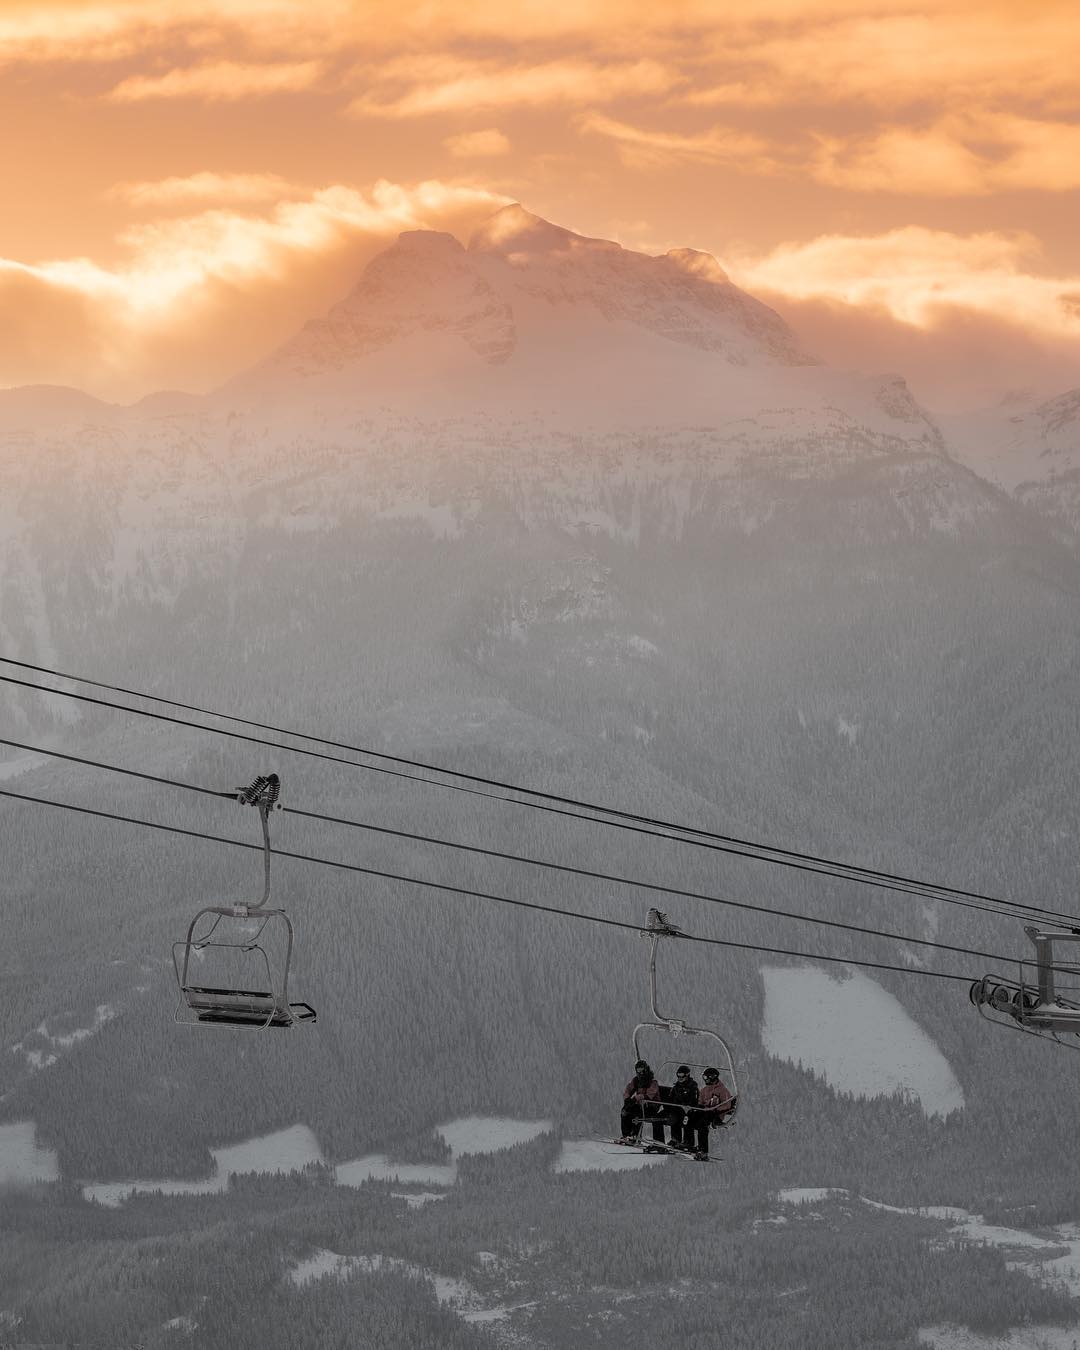 revelstoke-skiing-chair-resort